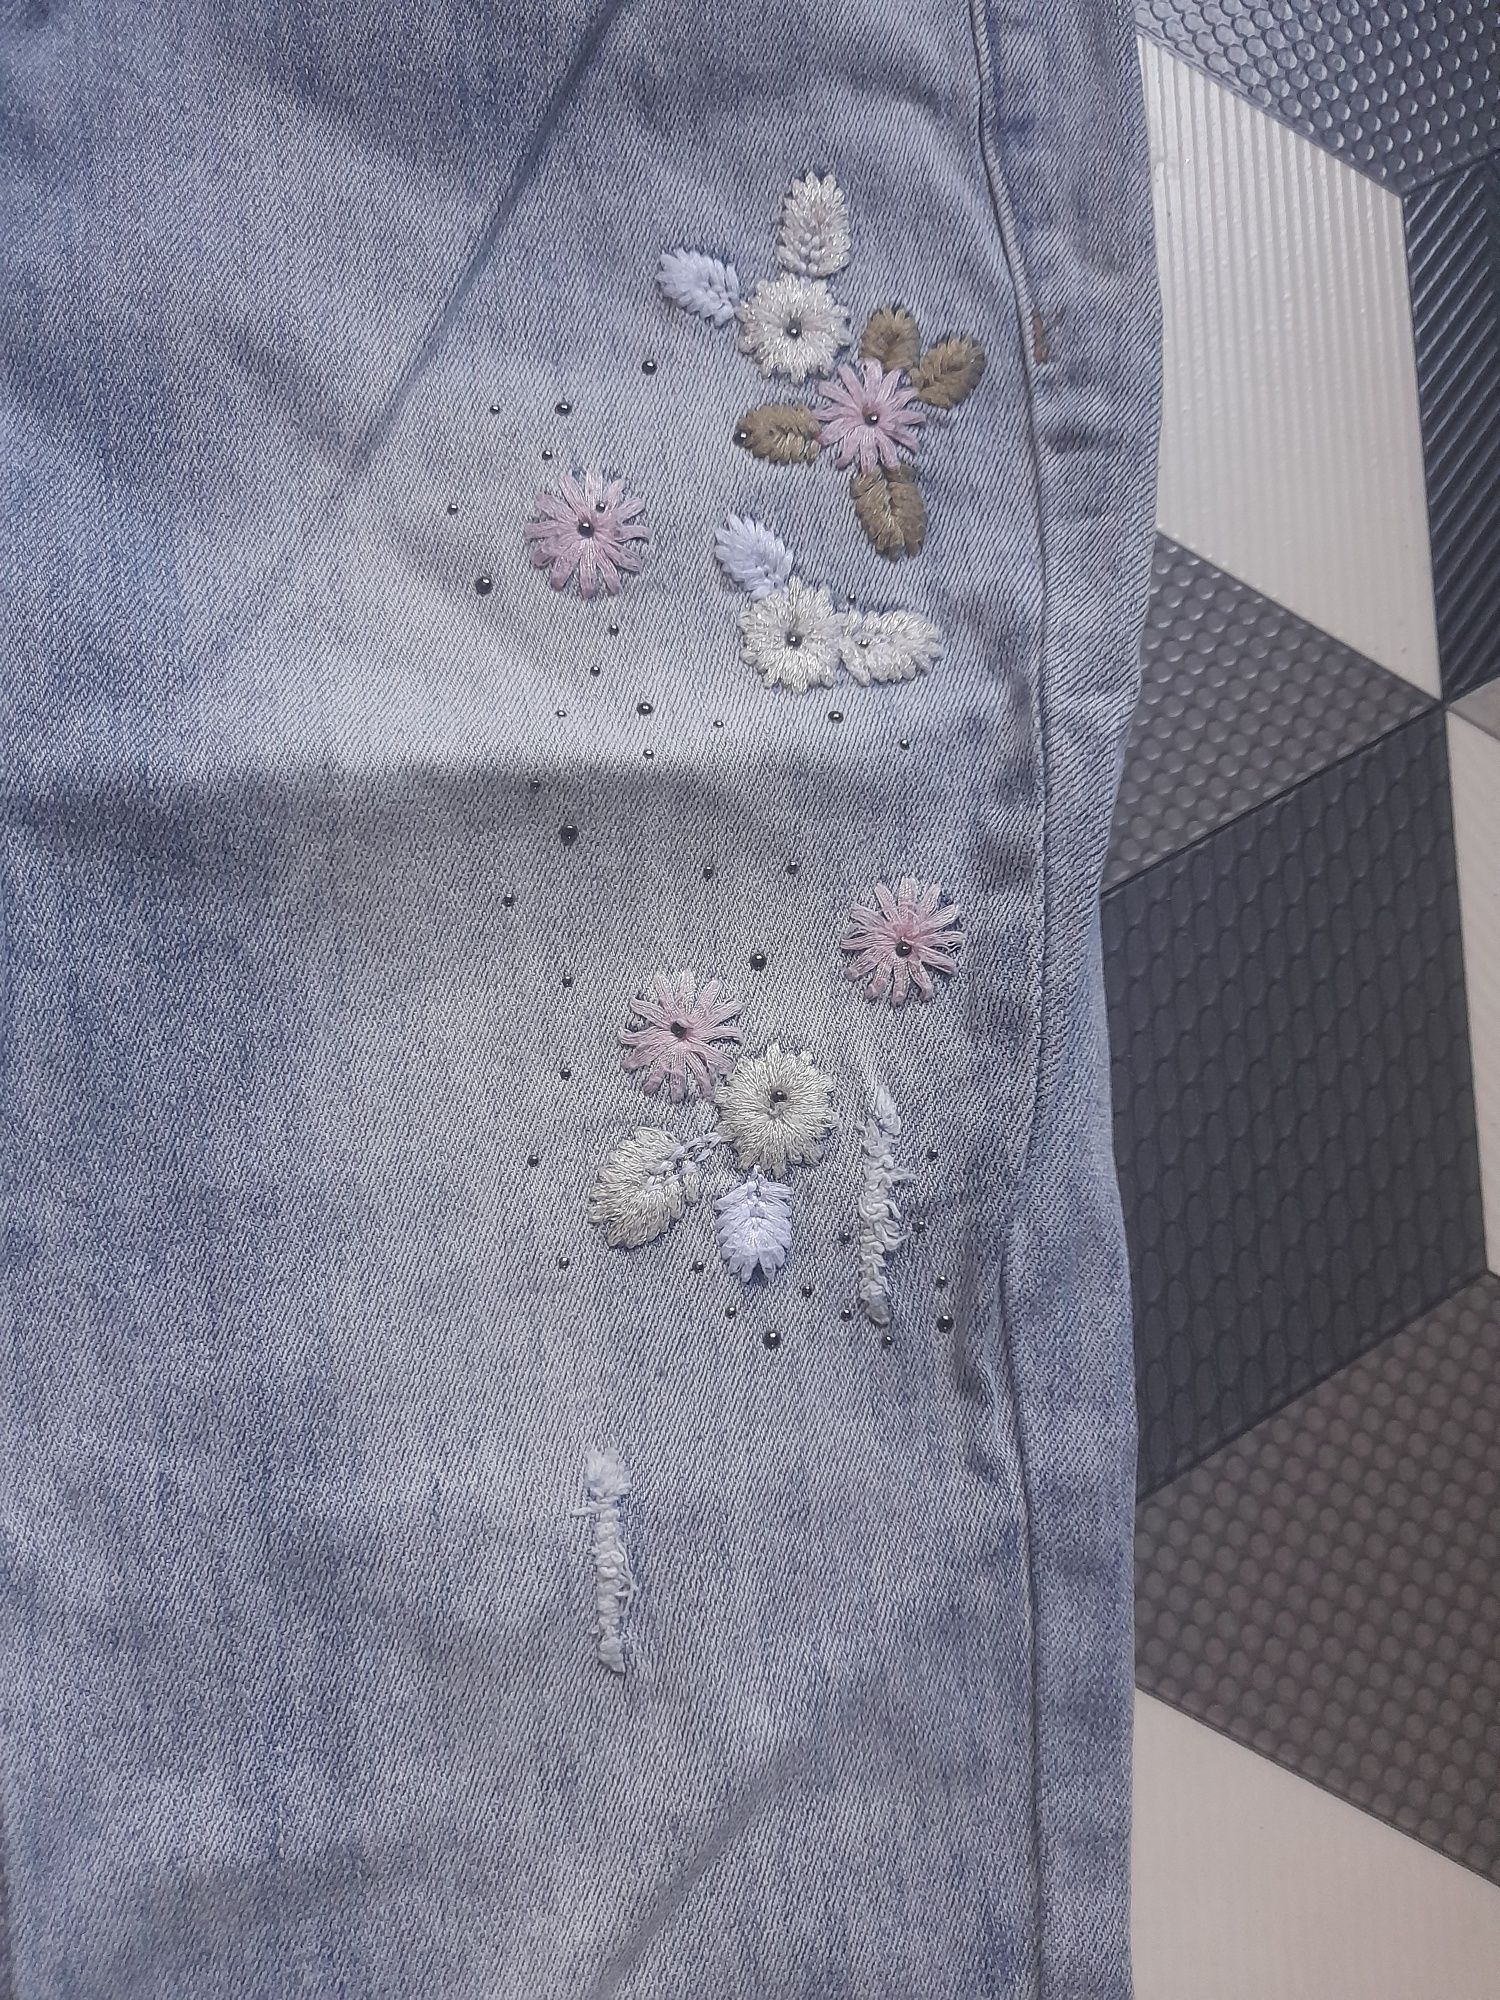 Spodnie jeans kwiaty roz L/xl